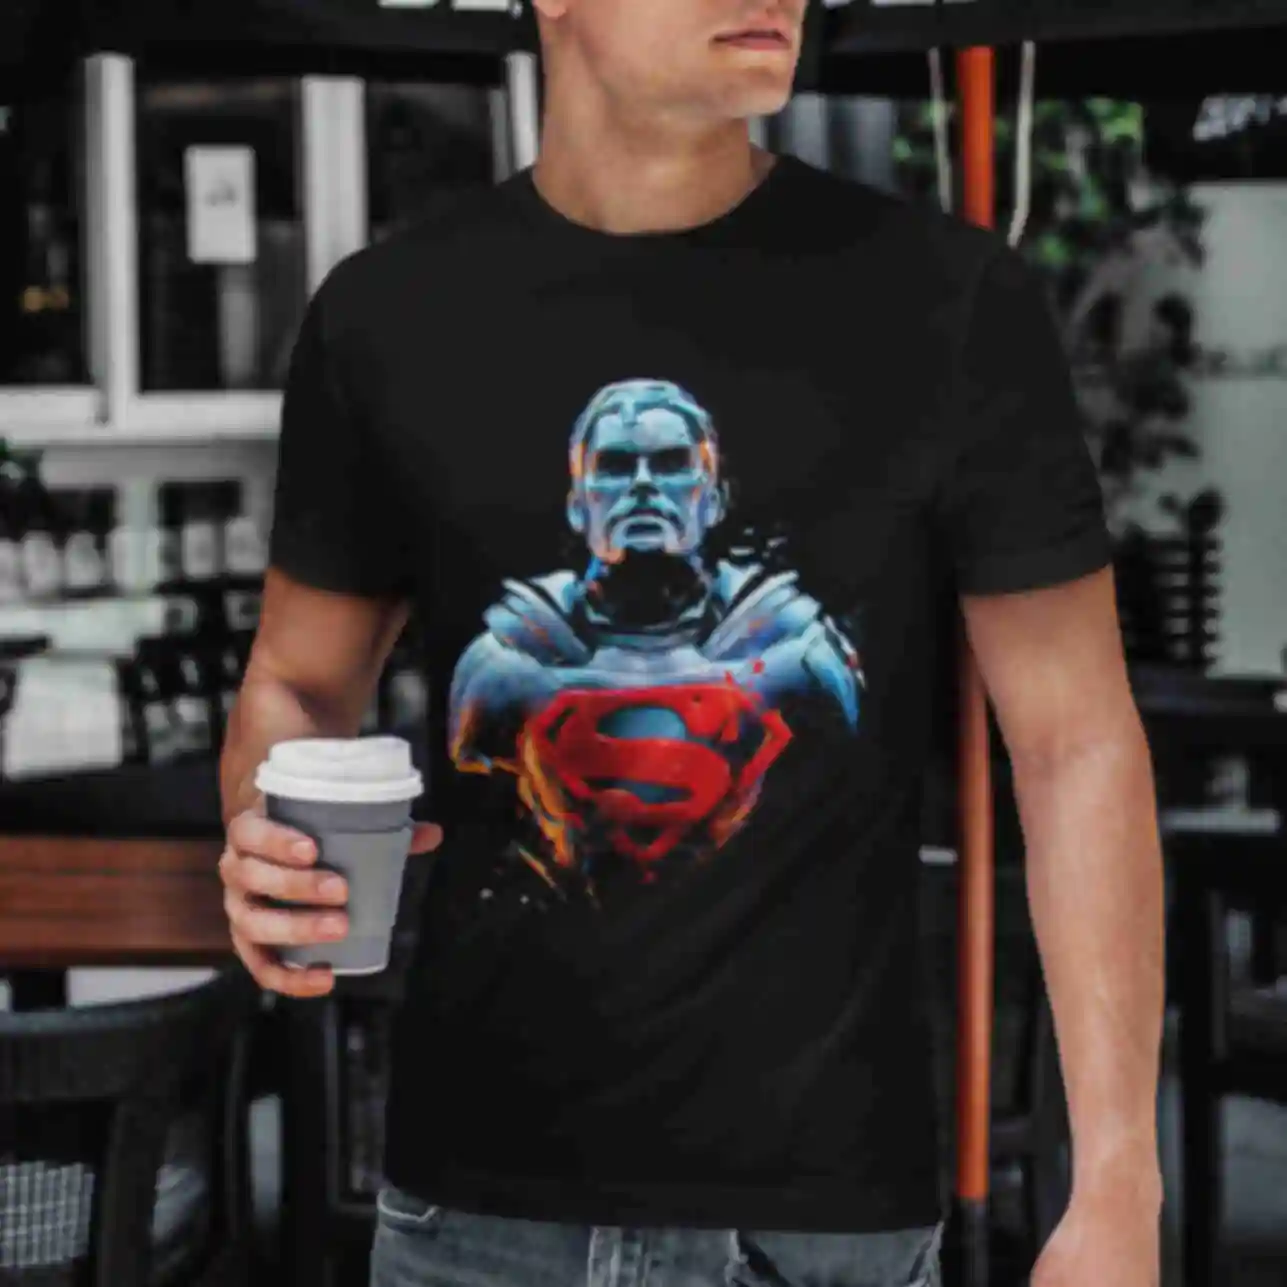 Футболка №17 • Людина зі сталі • Superman • Мерч • Одяг з супергероями в стилі DCФото №30